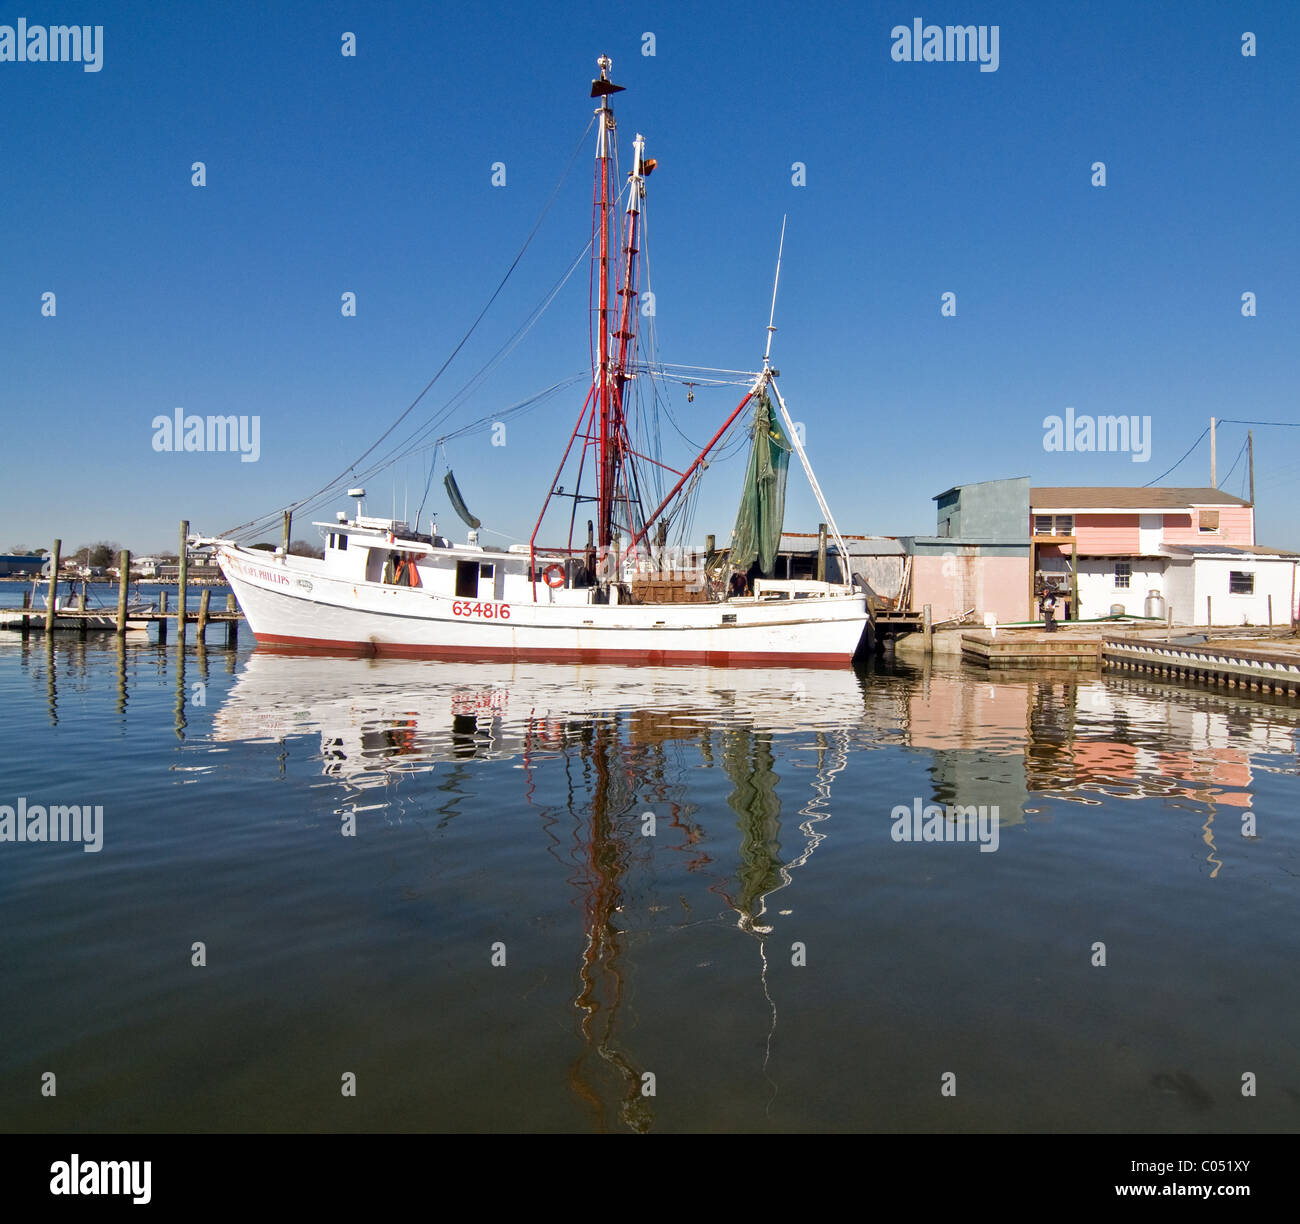 Shrimp Boat in Port Stock Photo